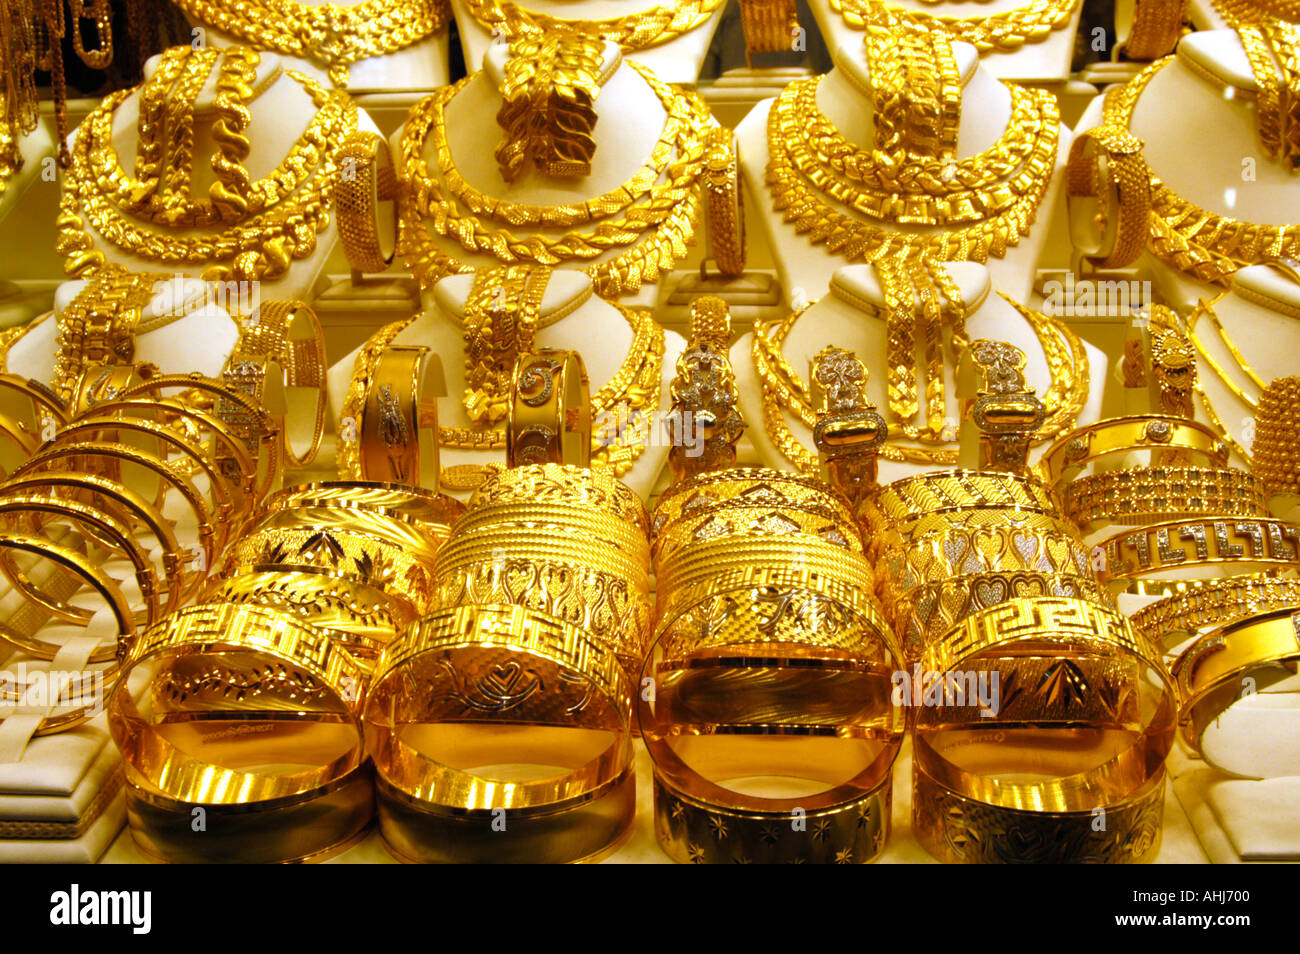 Goldschmuck in Schaufenster auf dem großen Basar, Istanbul, Türkei  Stockfotografie - Alamy